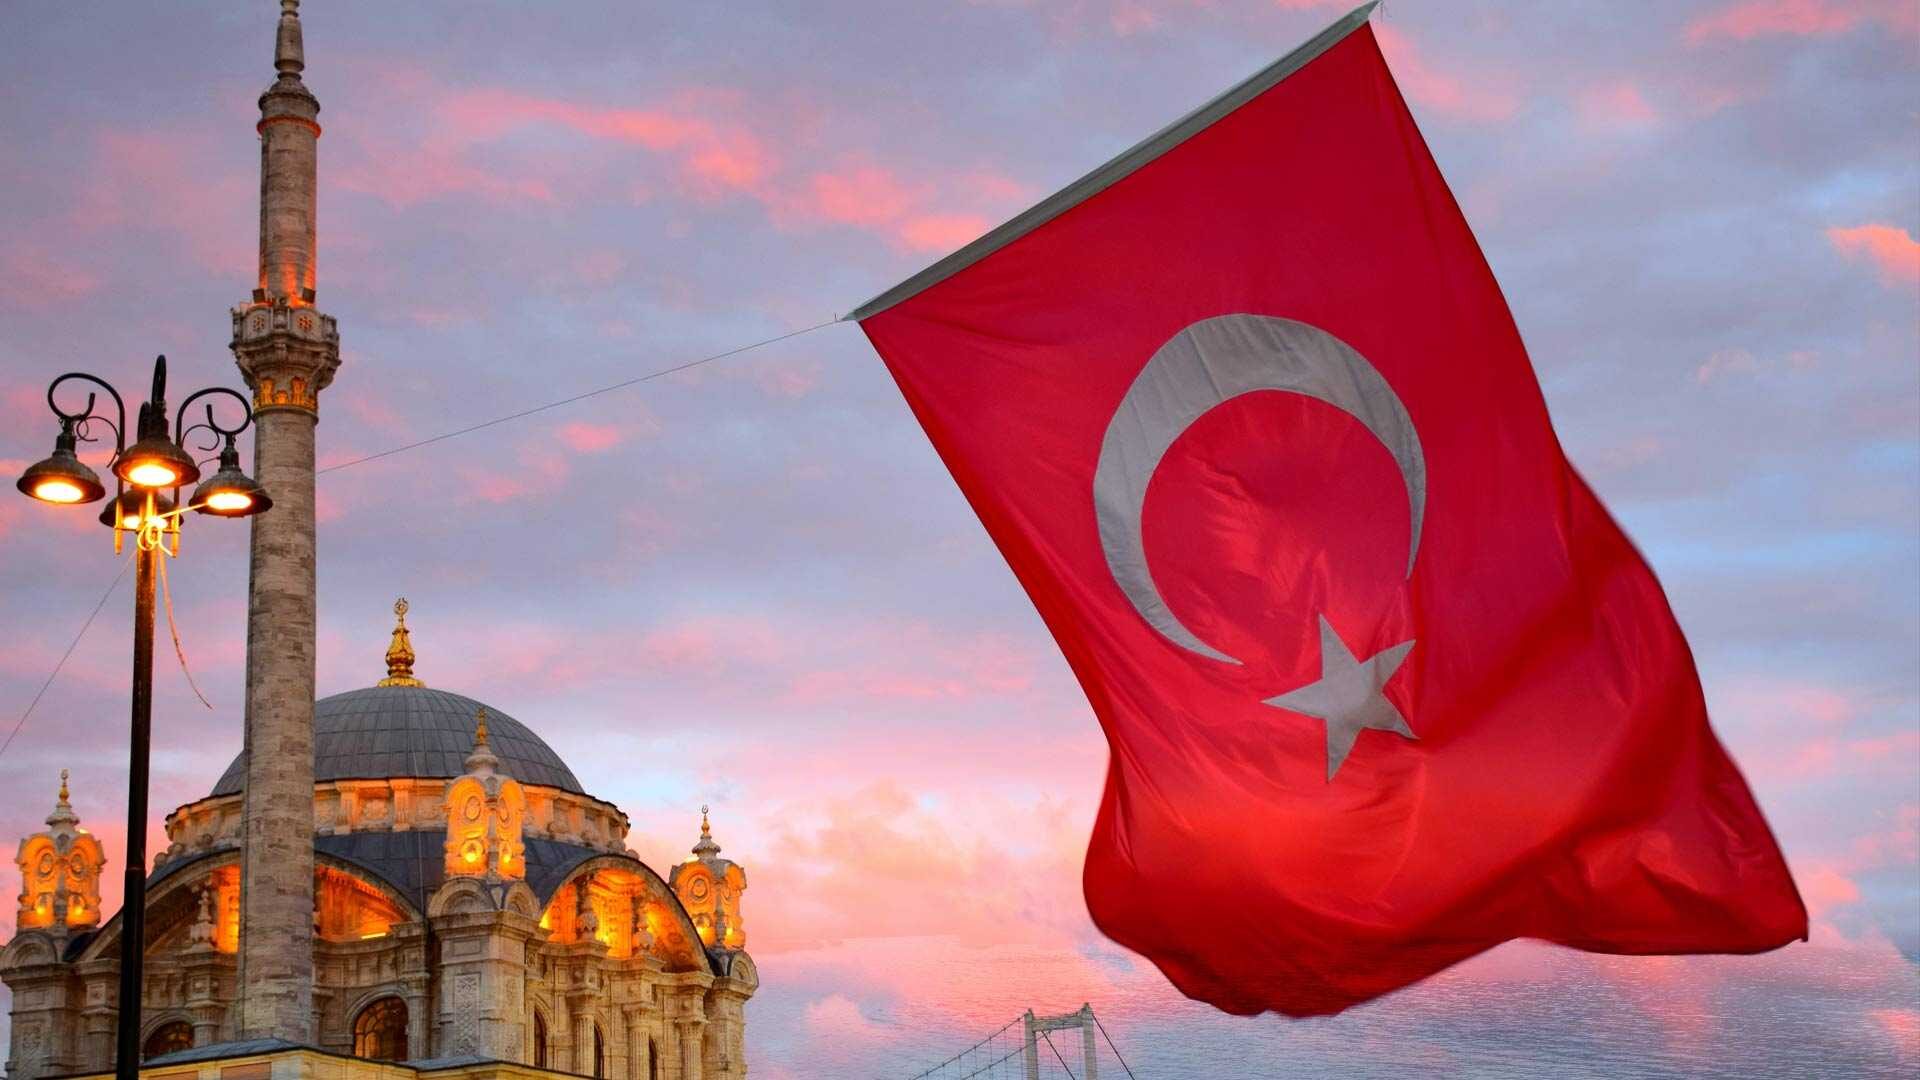 Ceny Turcja 2022. Czy w Turcji drogo? Zakupy, sklepy, restauracje